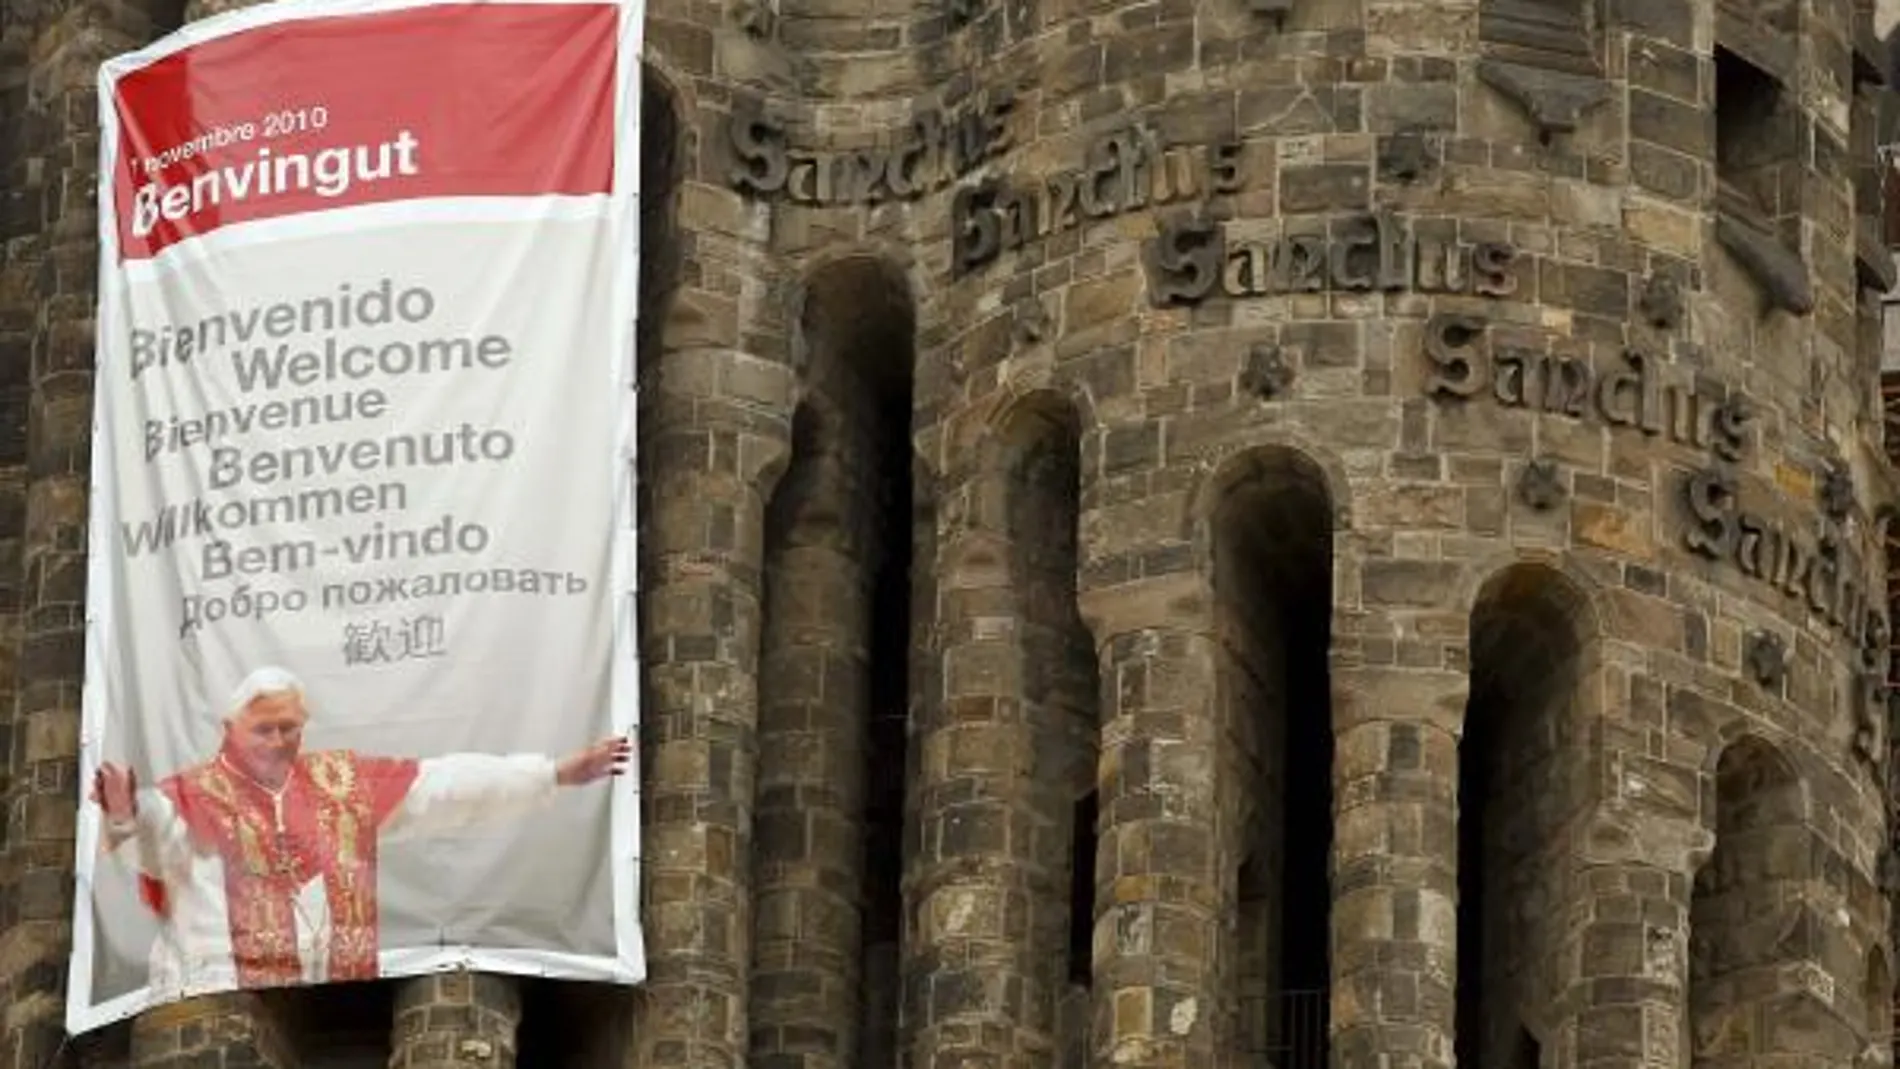 Detalle del cartel colgado en una de las torres de la fachada del Nacimiento de la Sagrada Familia en el que se da la bienvenida al Papa en varios idiomas